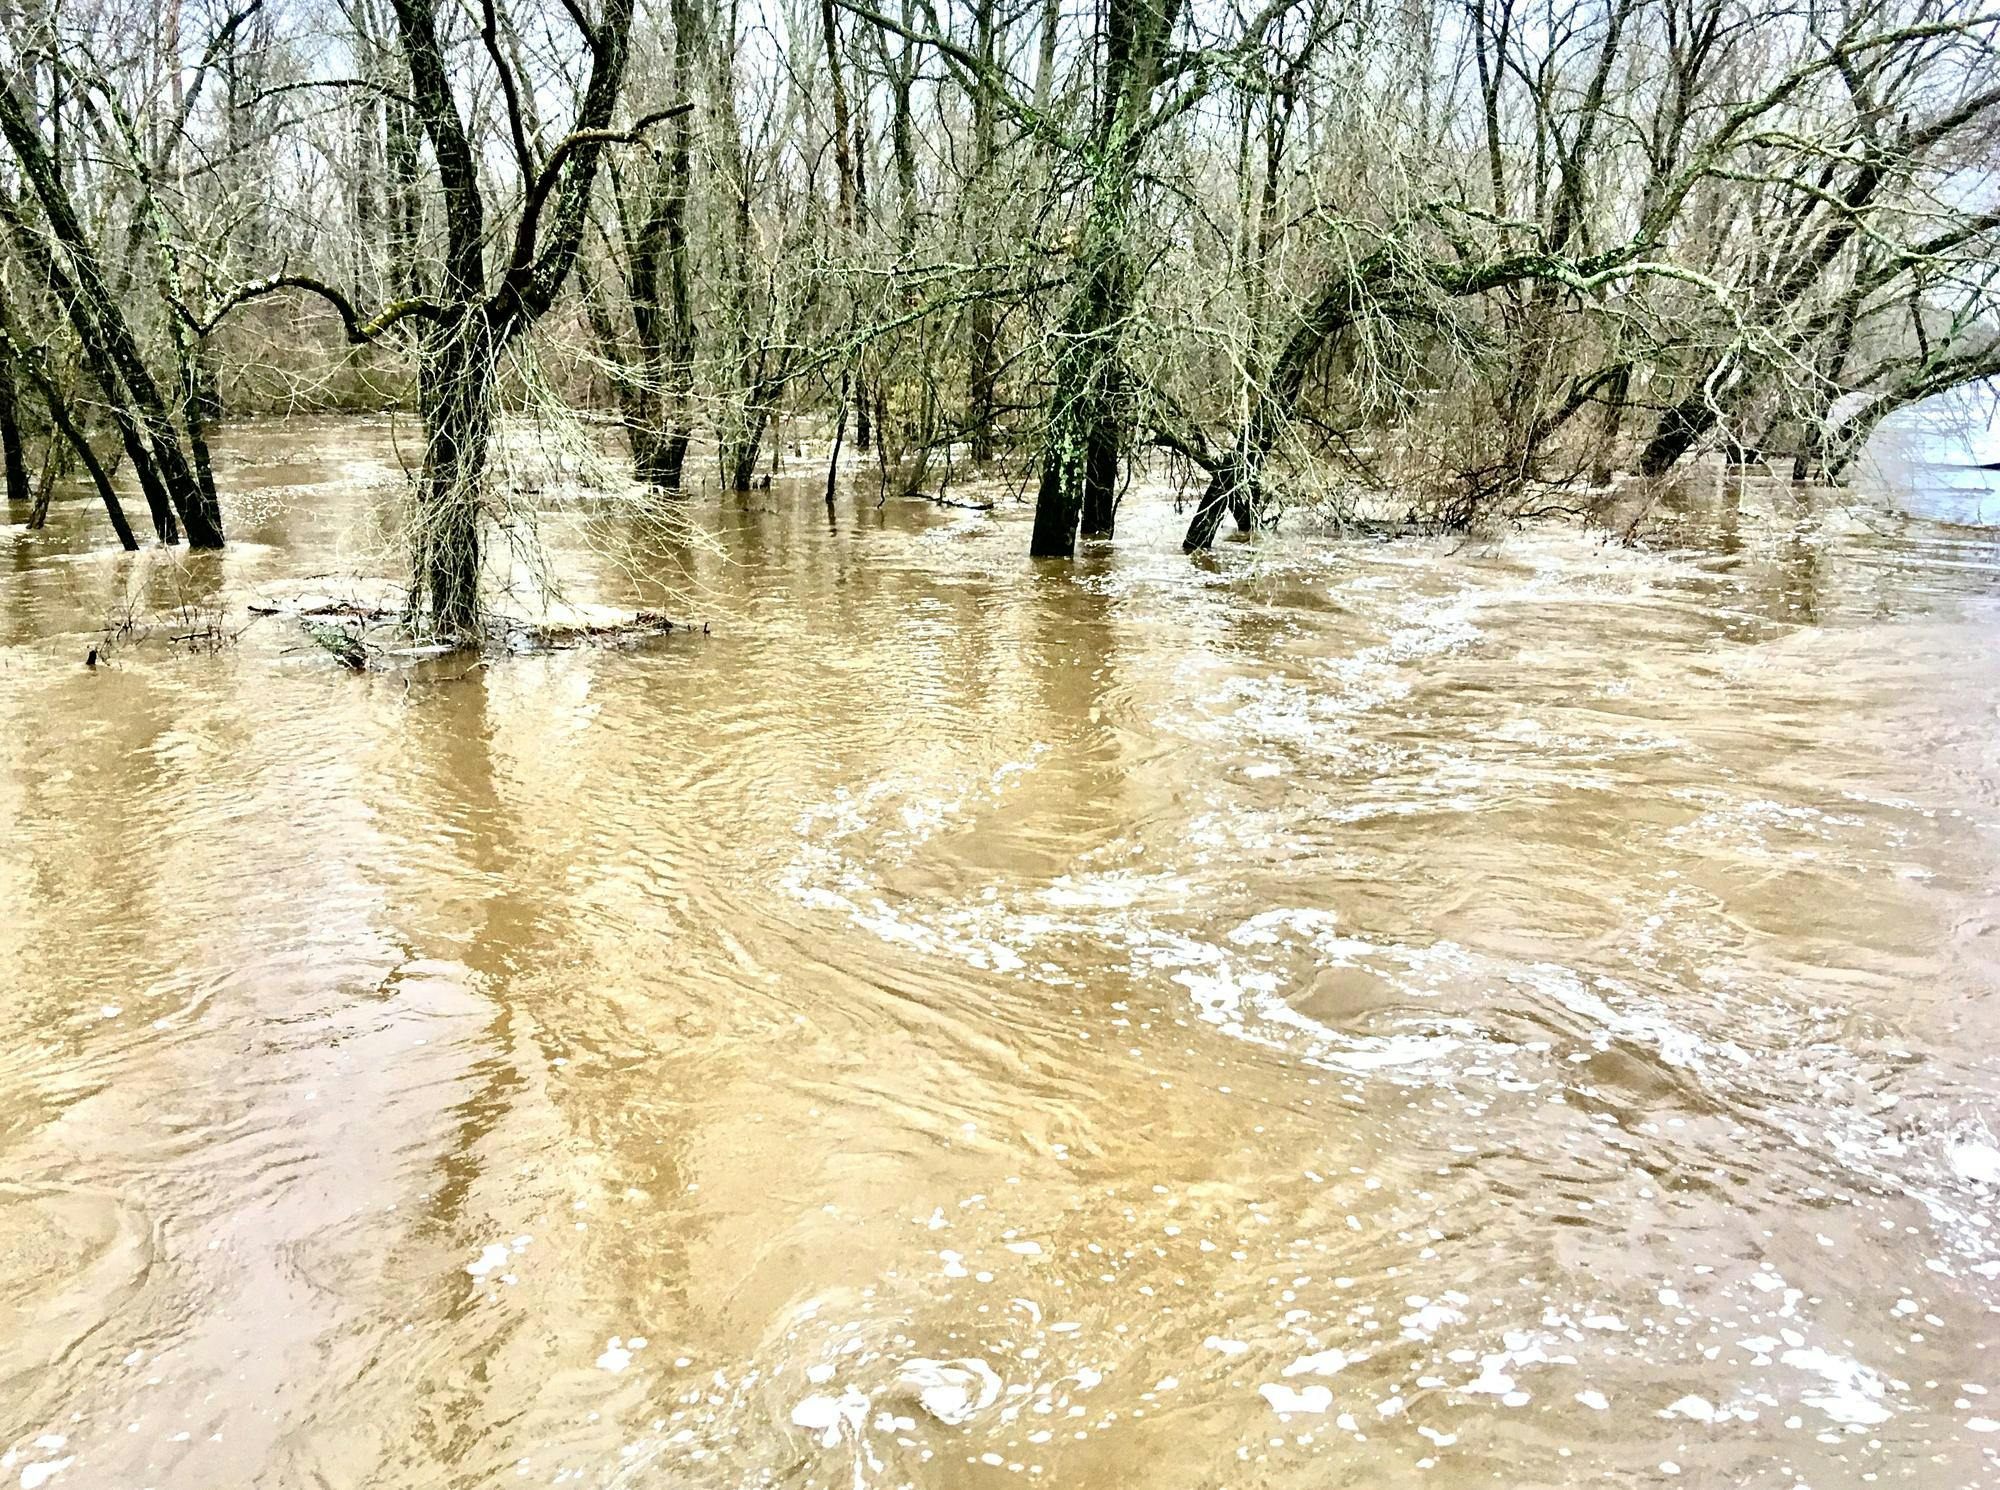 Muddy flood waters swirl around trees.